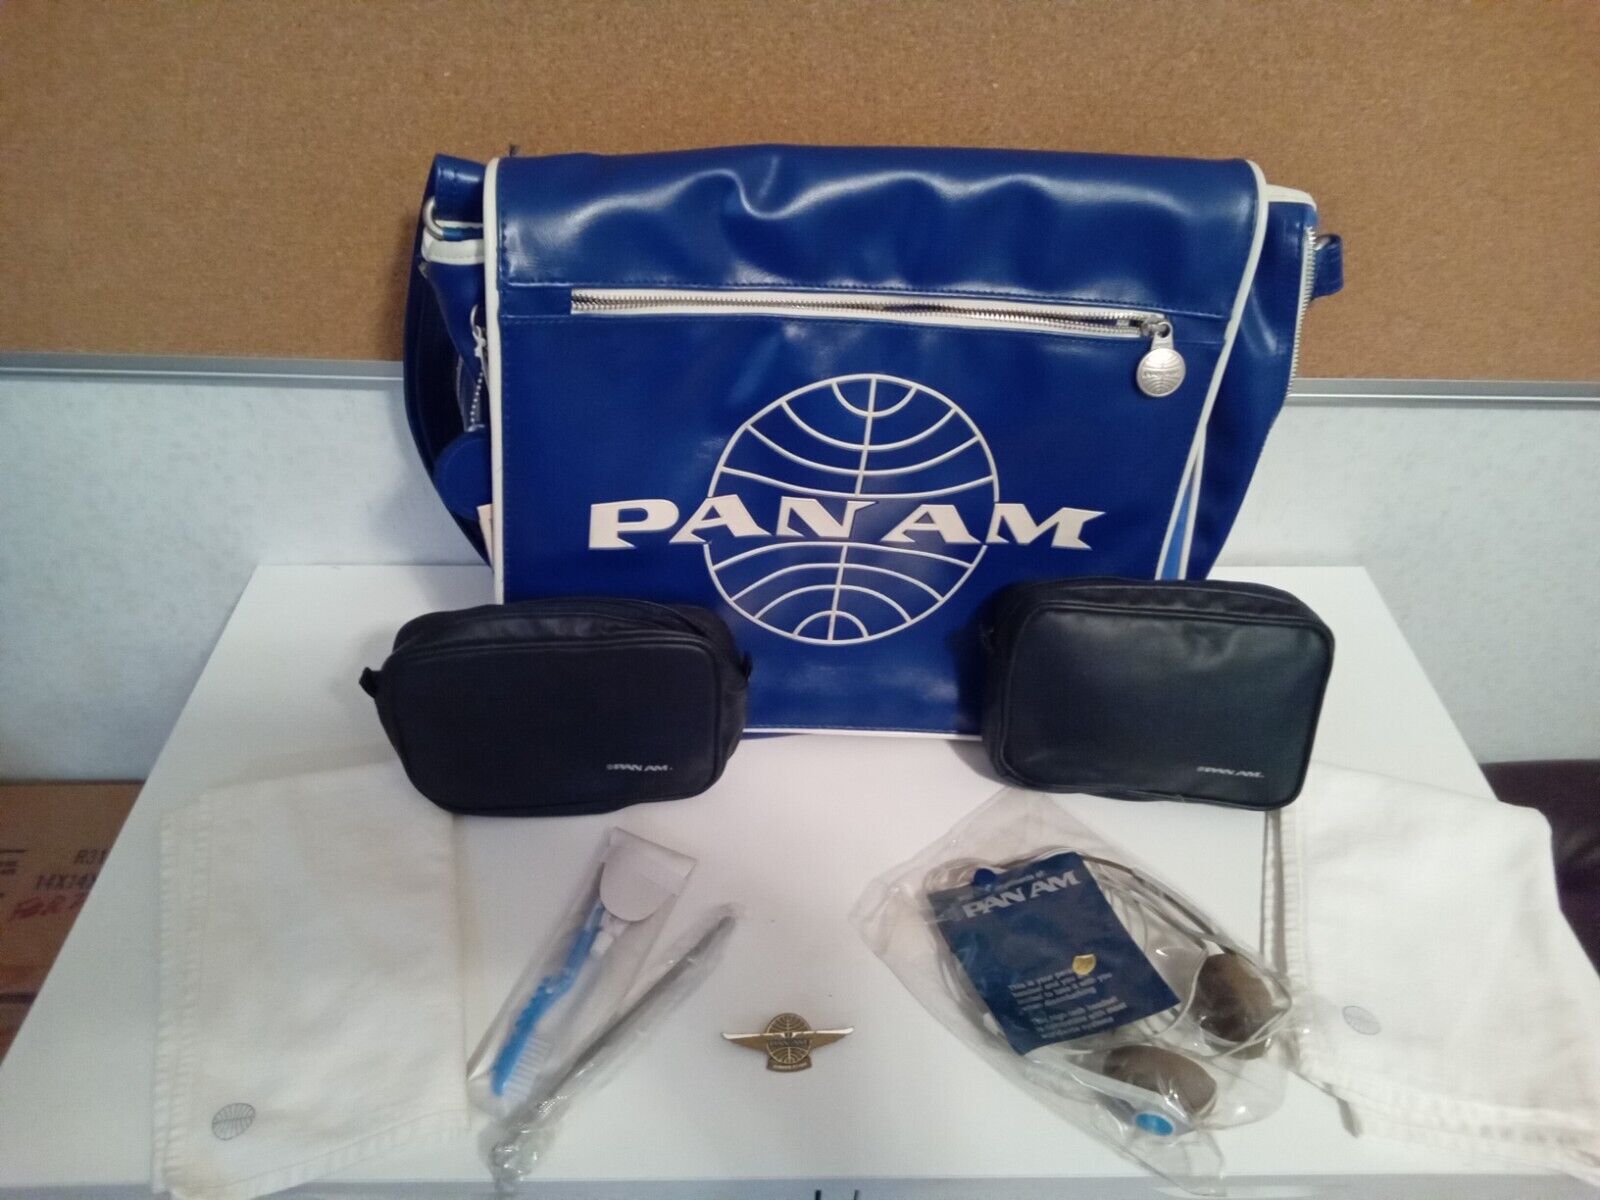 Vintage Pan Am Shoulder Bag, 2 Wash Bags, Headphones, Junior Flyer Pin & Napkins